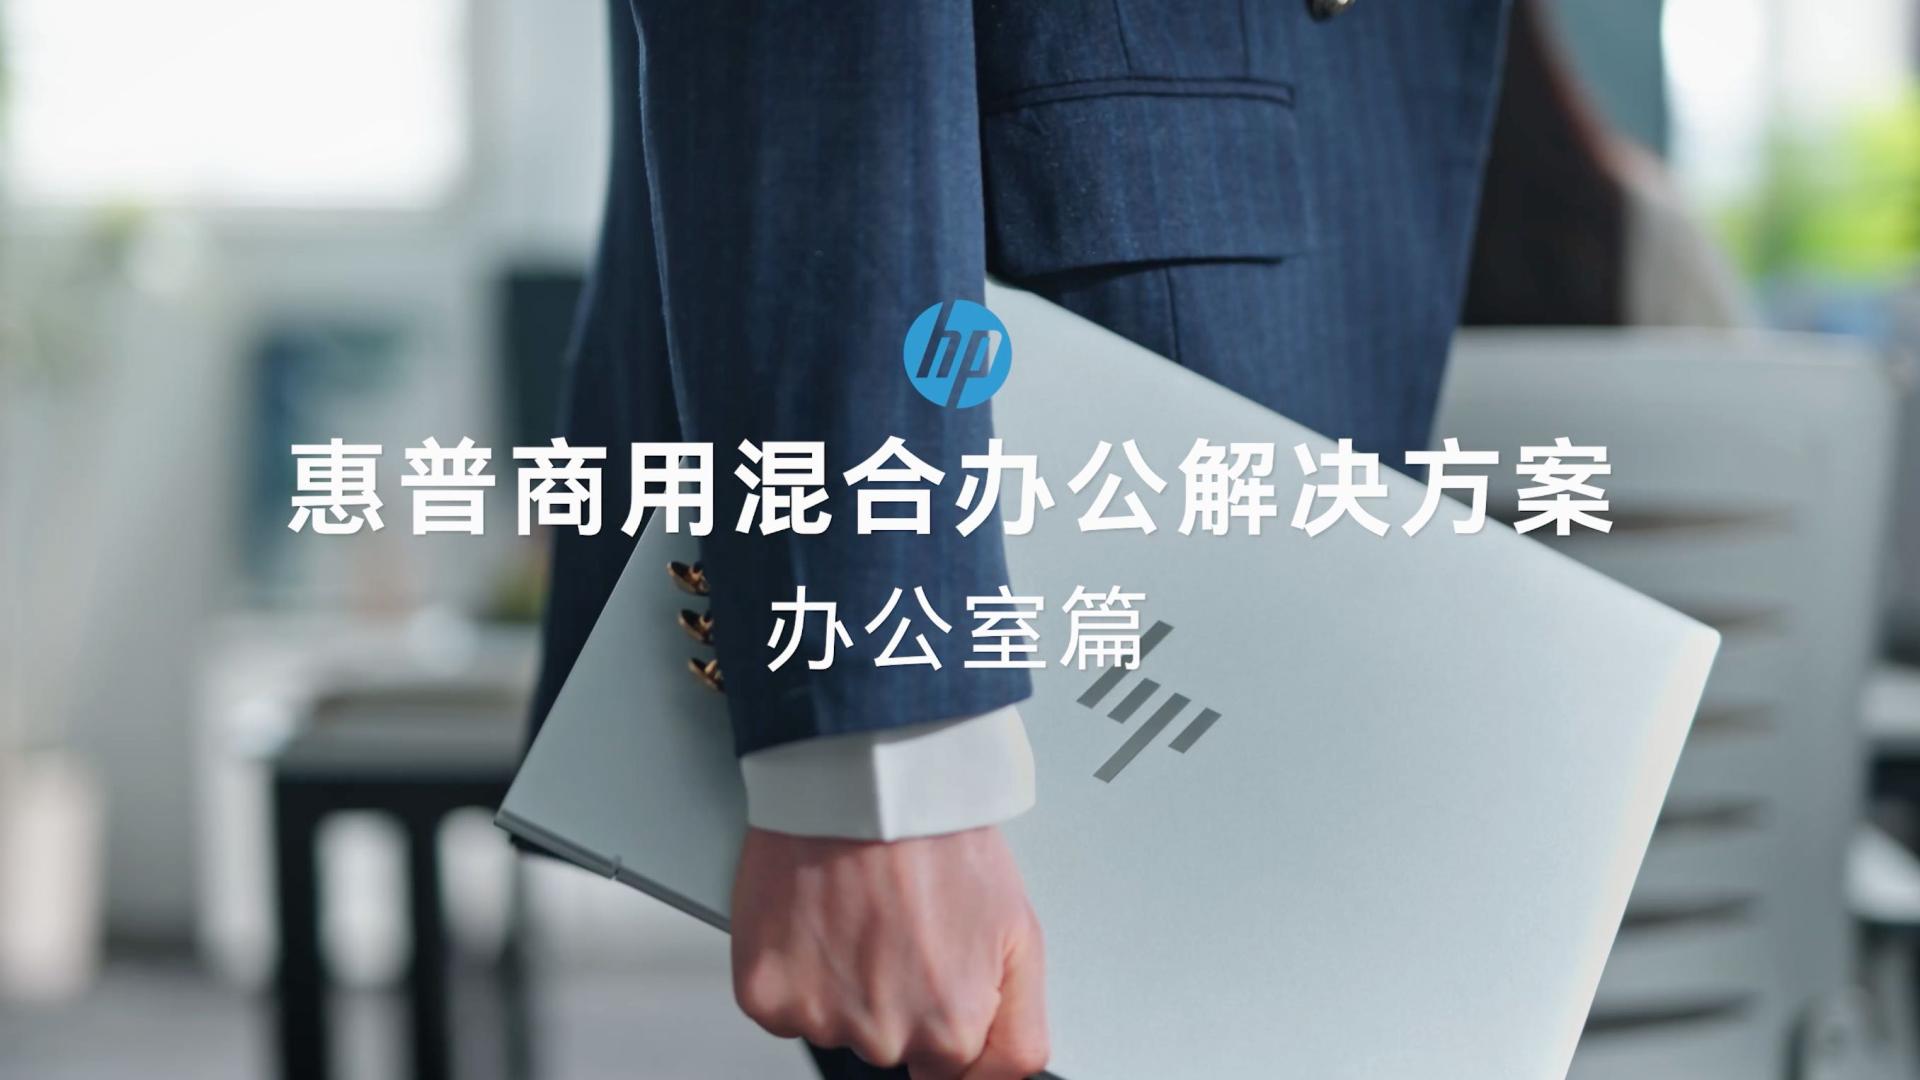 HP产品视频【办公室篇】